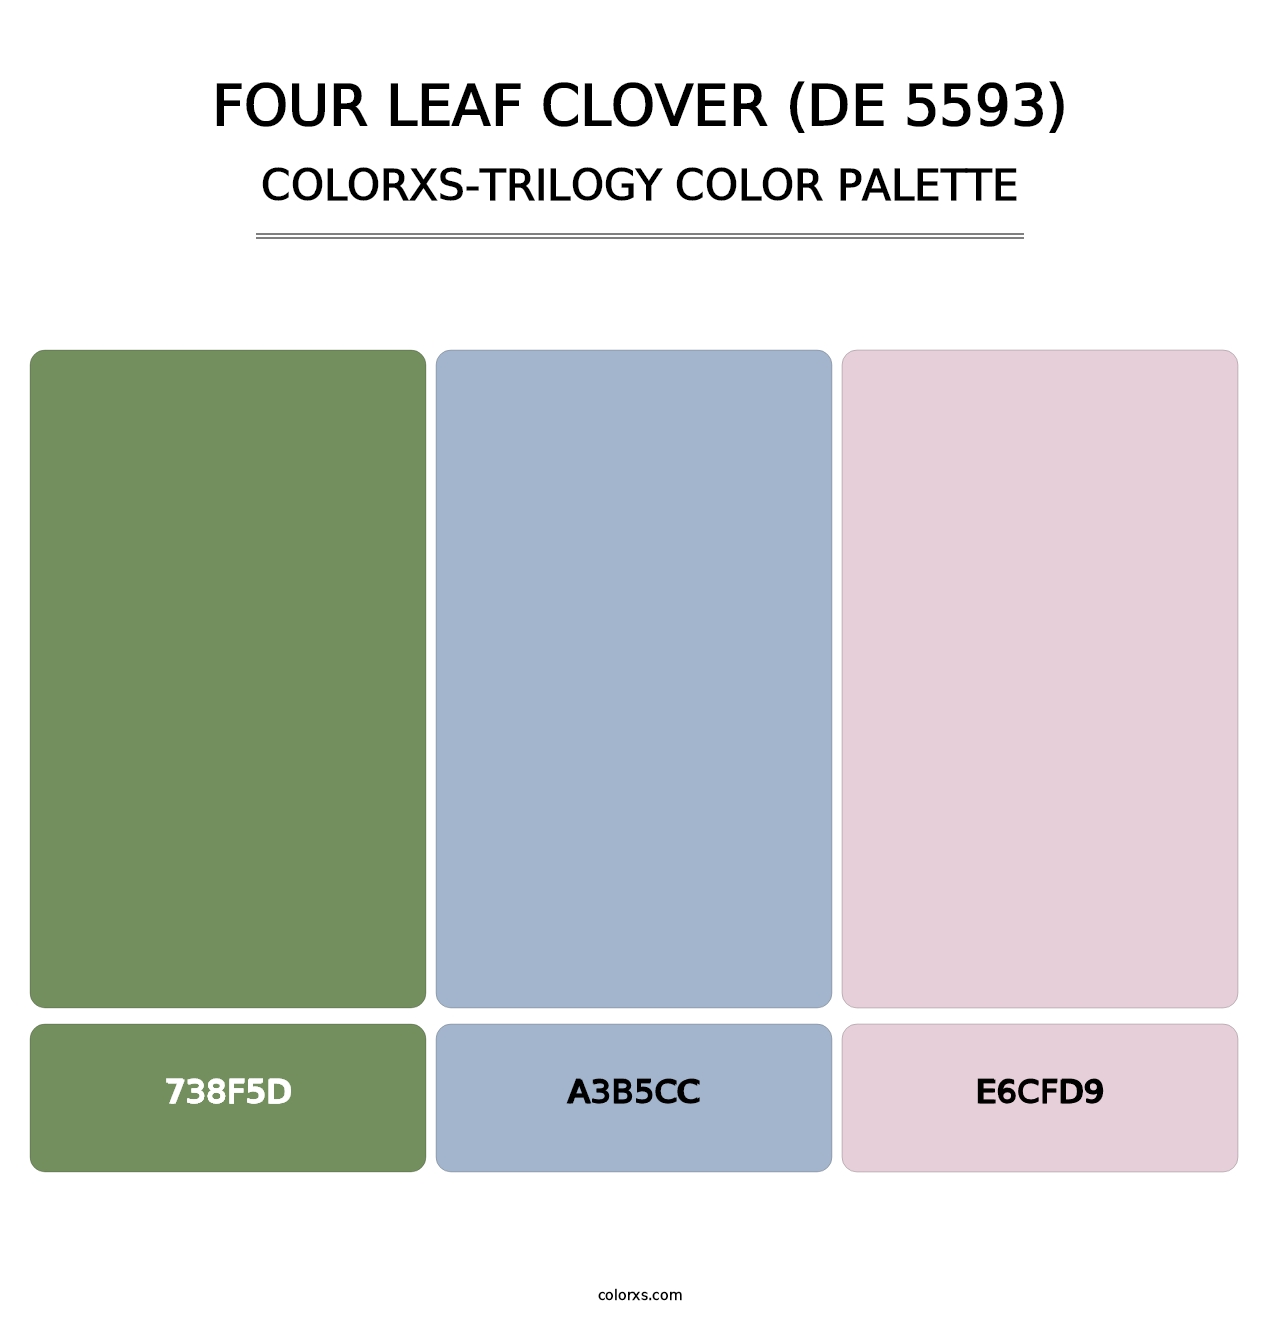 Four Leaf Clover (DE 5593) - Colorxs Trilogy Palette